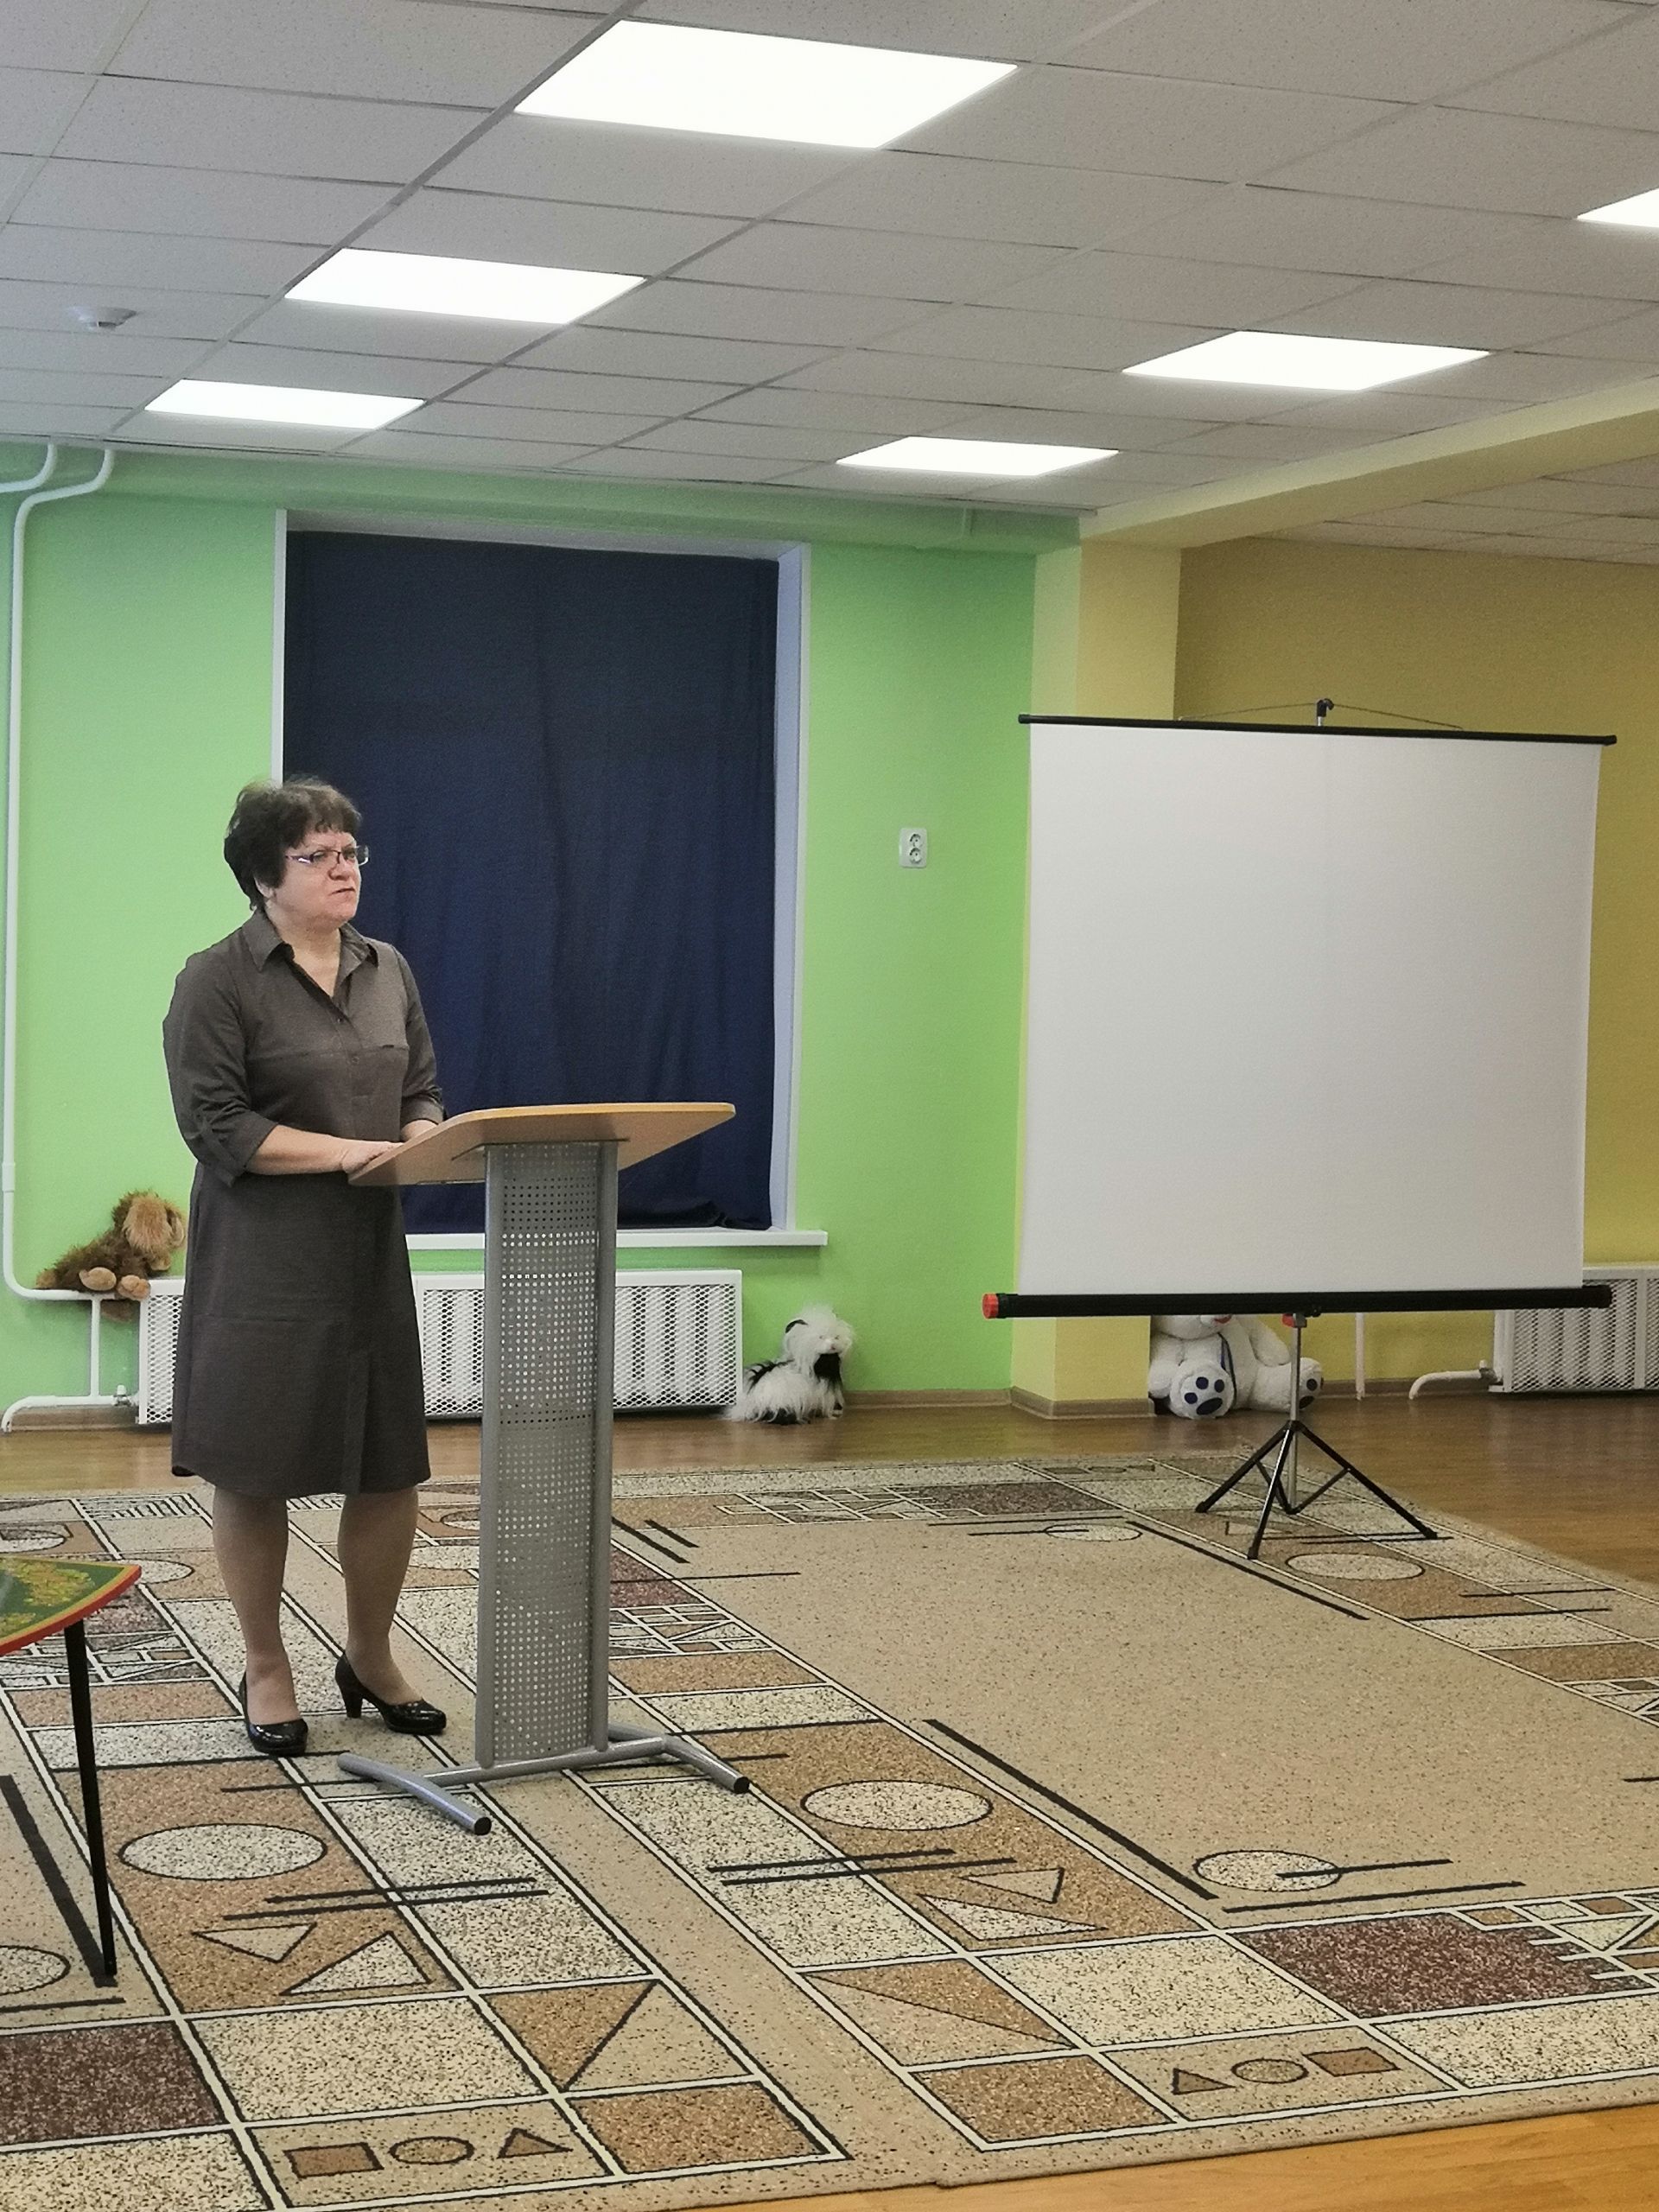 Воспитатели Нижнекамского района обменялись педагогическим опытом